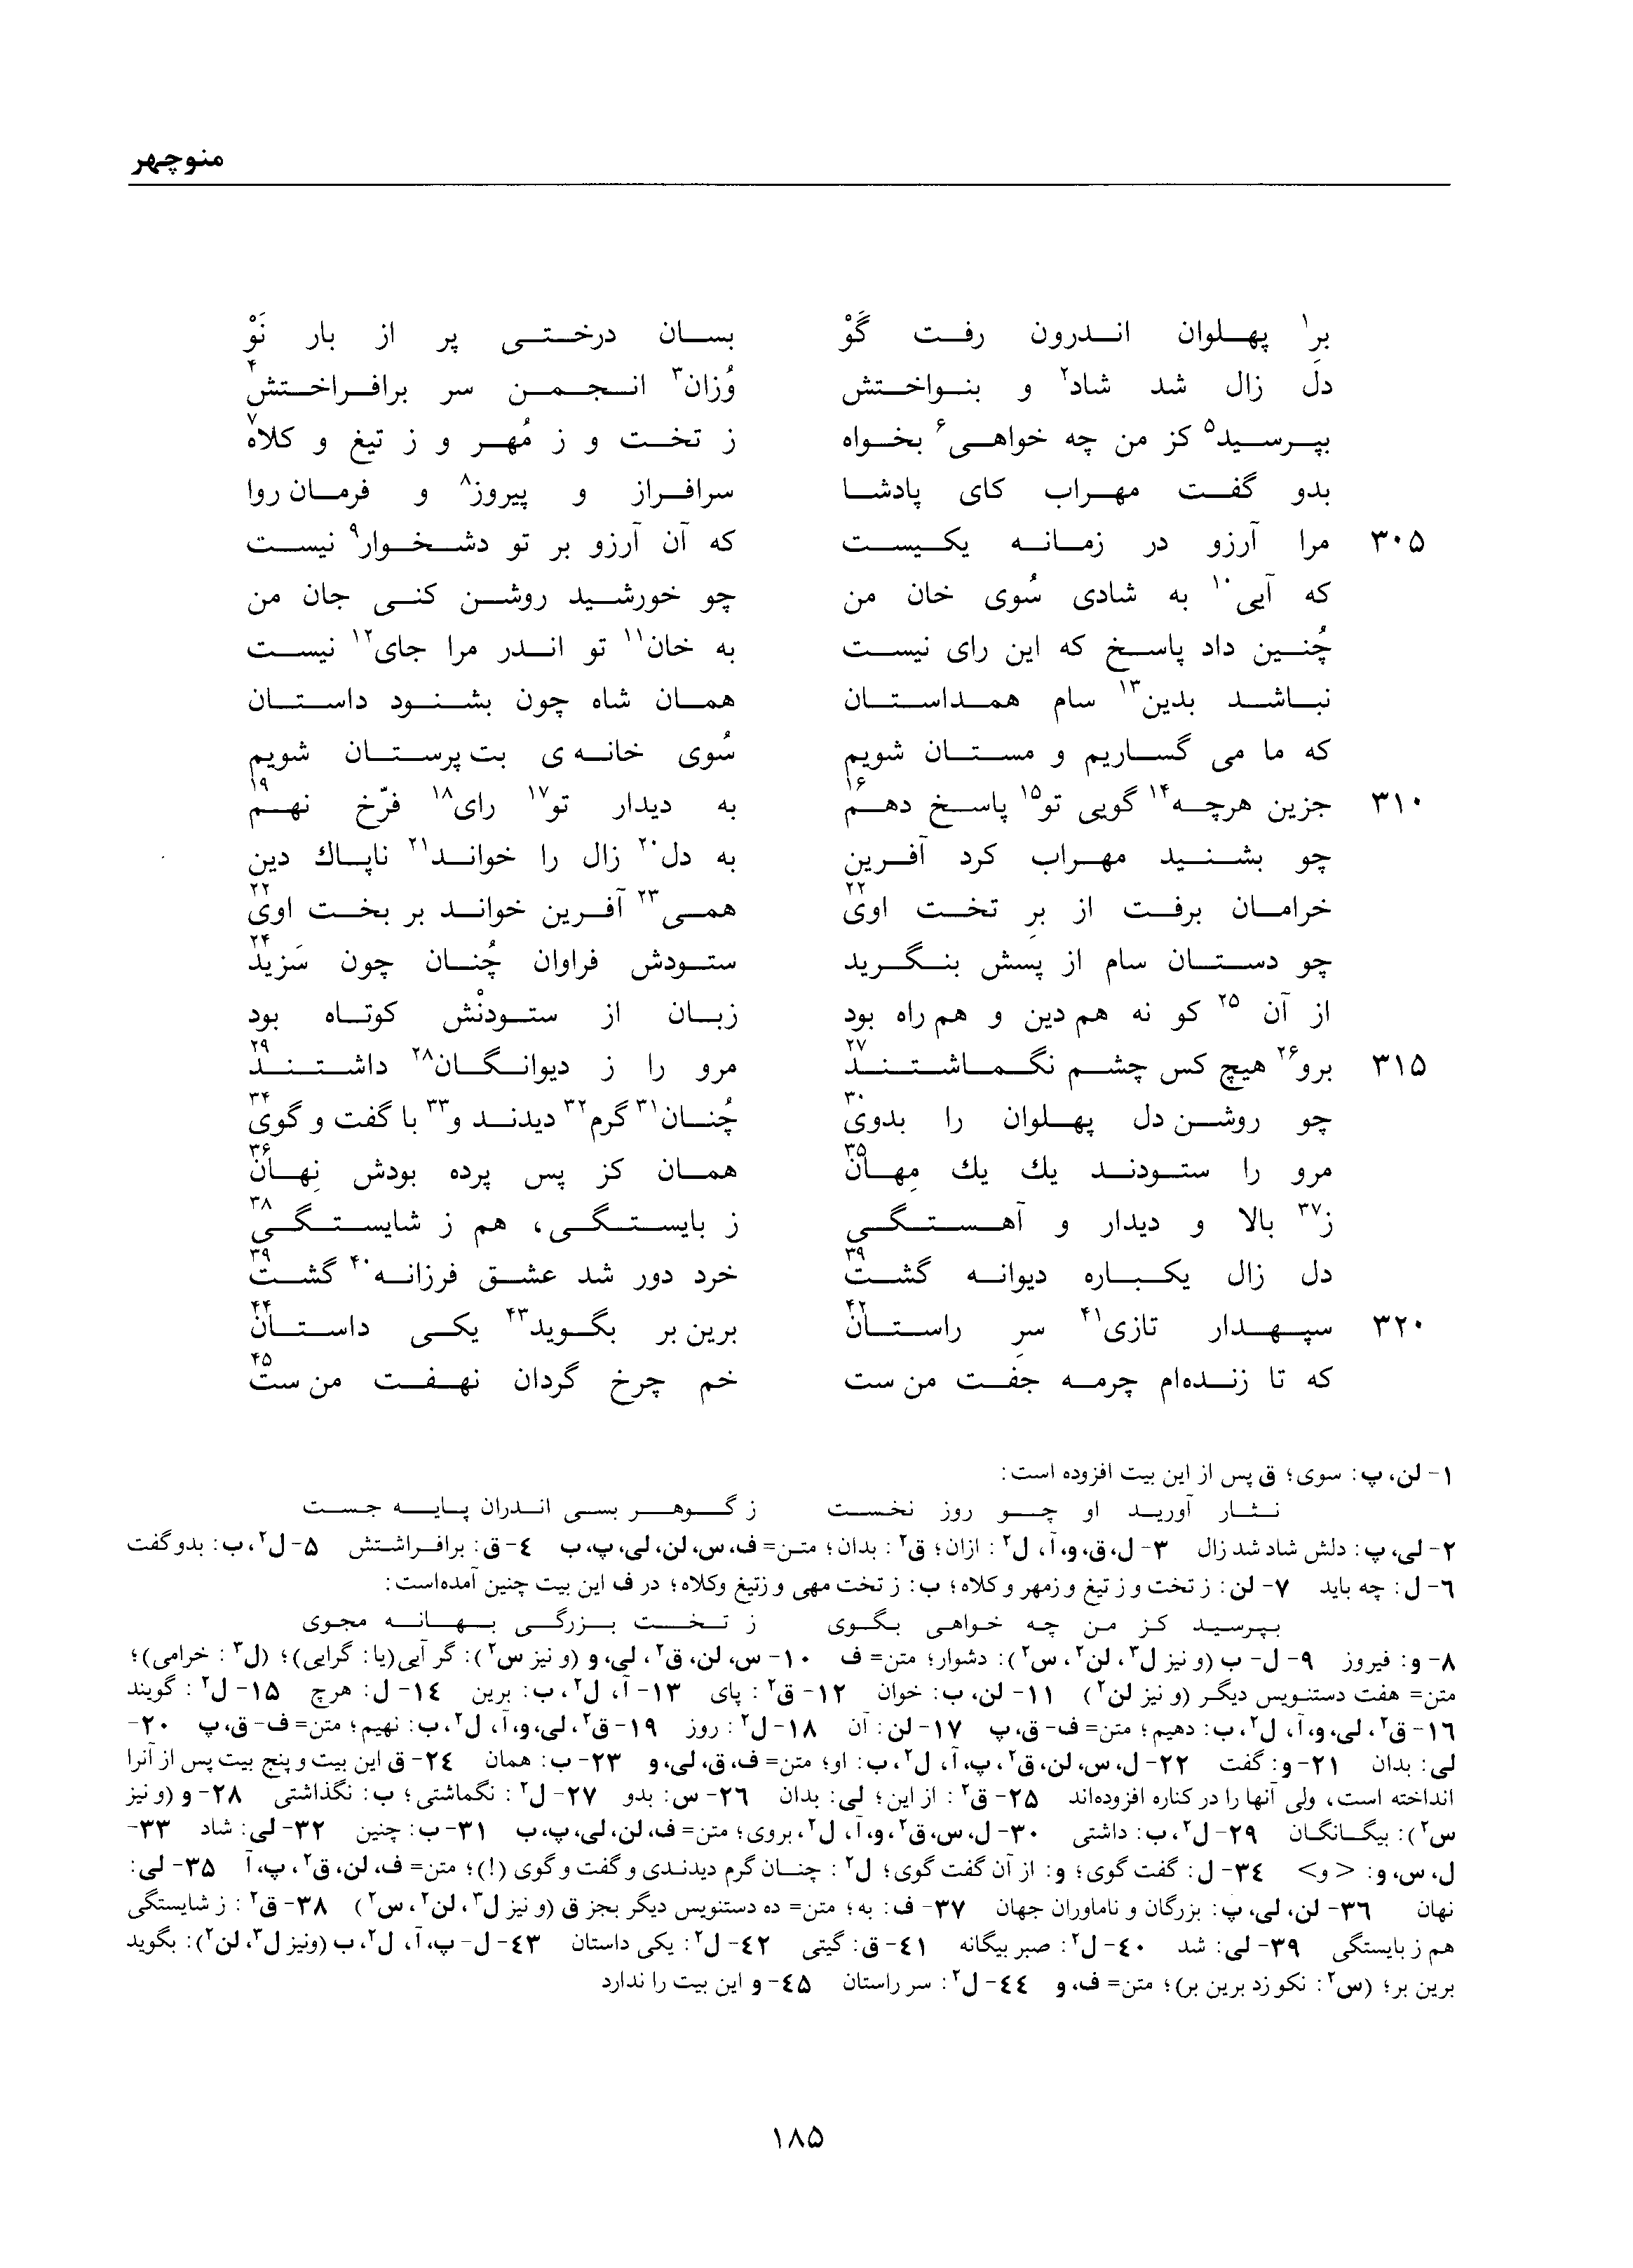 vol. 1, p. 185